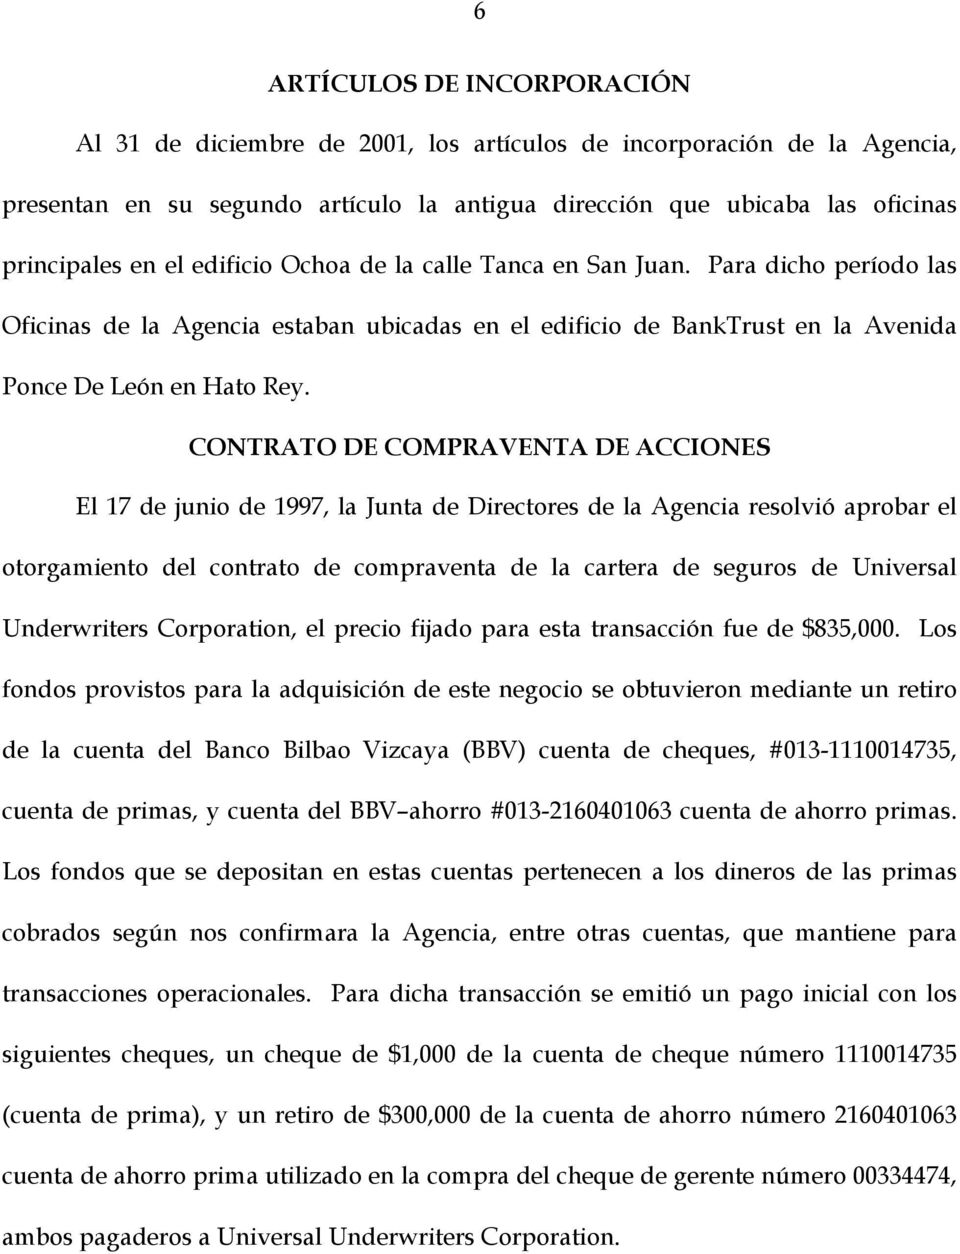 CONTRATO DE COMPRAVENTA DE ACCIONES El 7 de junio de 997, la Junta de Directores de la Agencia resolvió aprobar el otorgamiento del contrato de compraventa de la cartera de seguros de Universal